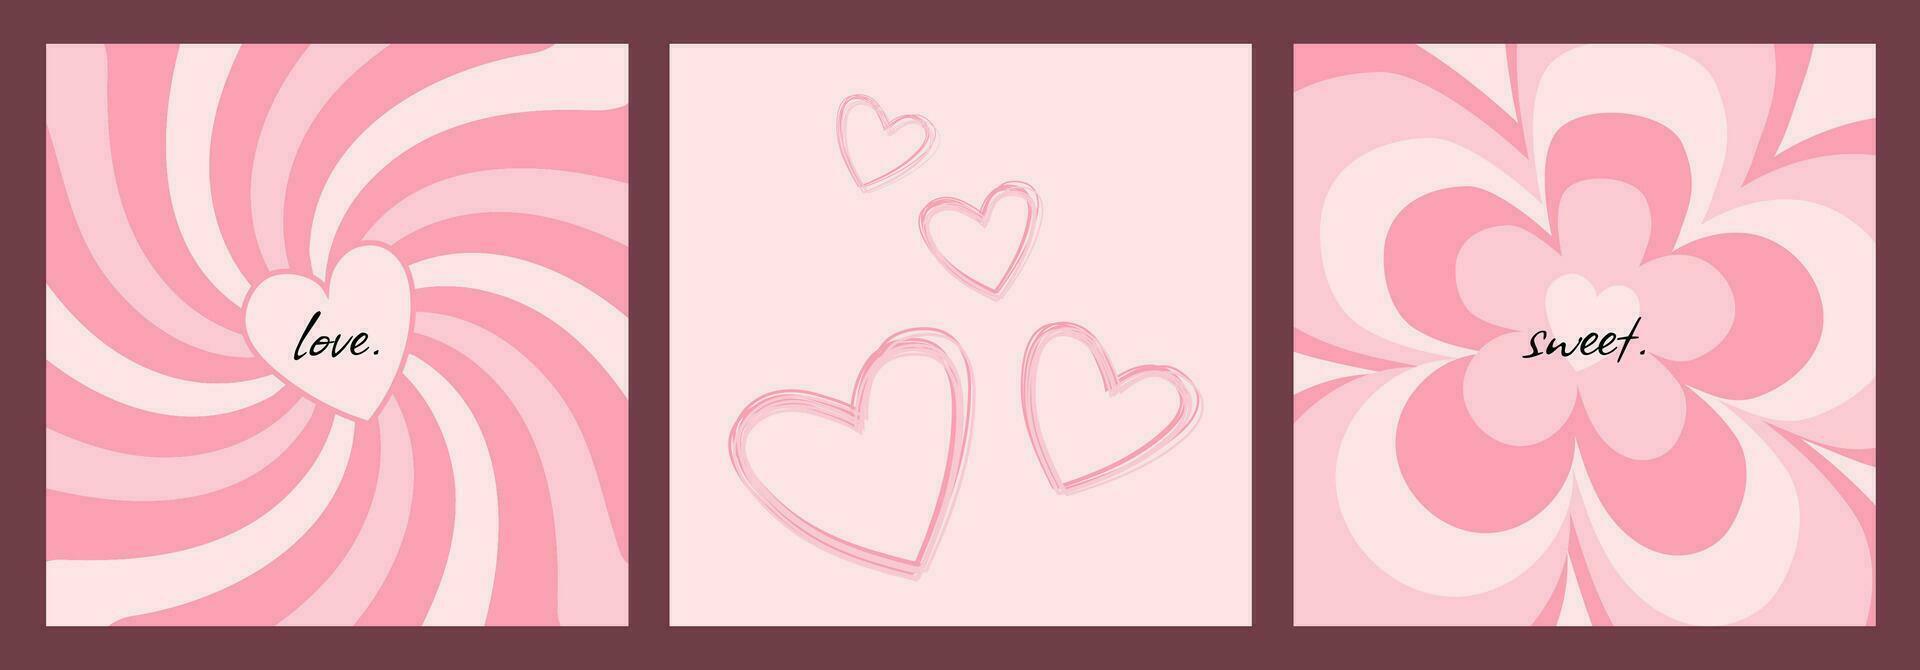 reeks van schattig romantisch Valentijnsdag dag kaarten, ansichtkaarten met hand- getrokken patronen, harten, bloemen en tekst hartelijk groeten, vector decoratief illustraties.